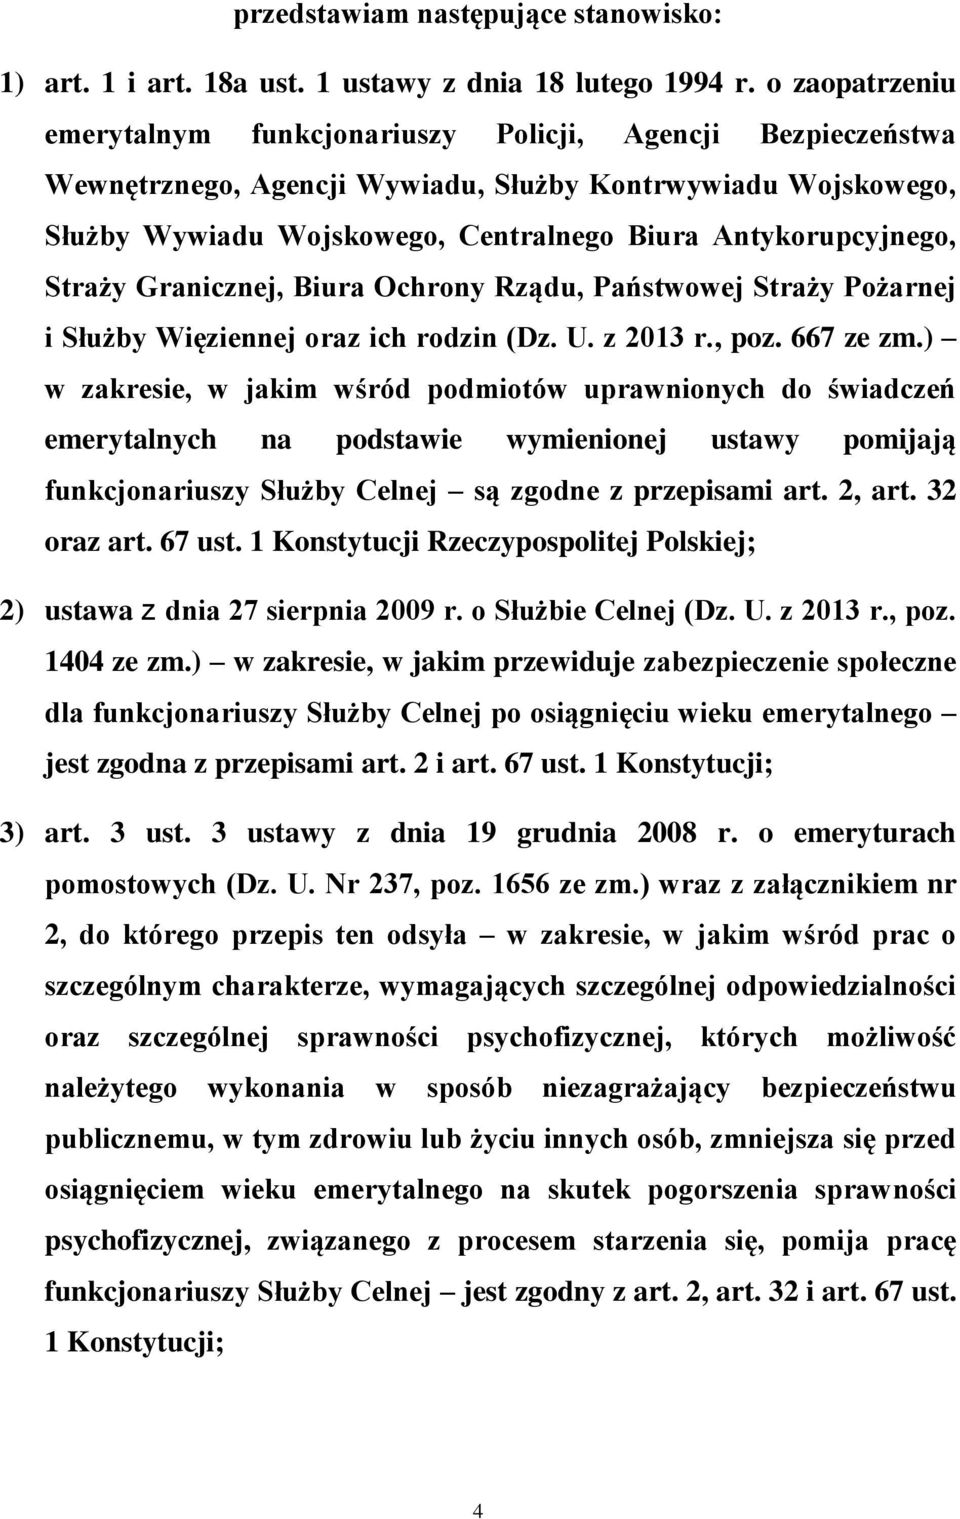 Antykorupcyjnego, Straży Granicznej, Biura Ochrony Rządu, Państwowej Straży Pożarnej i Służby Więziennej oraz ich rodzin (Dz. U. z 2013 r., poz. 667 ze zm.